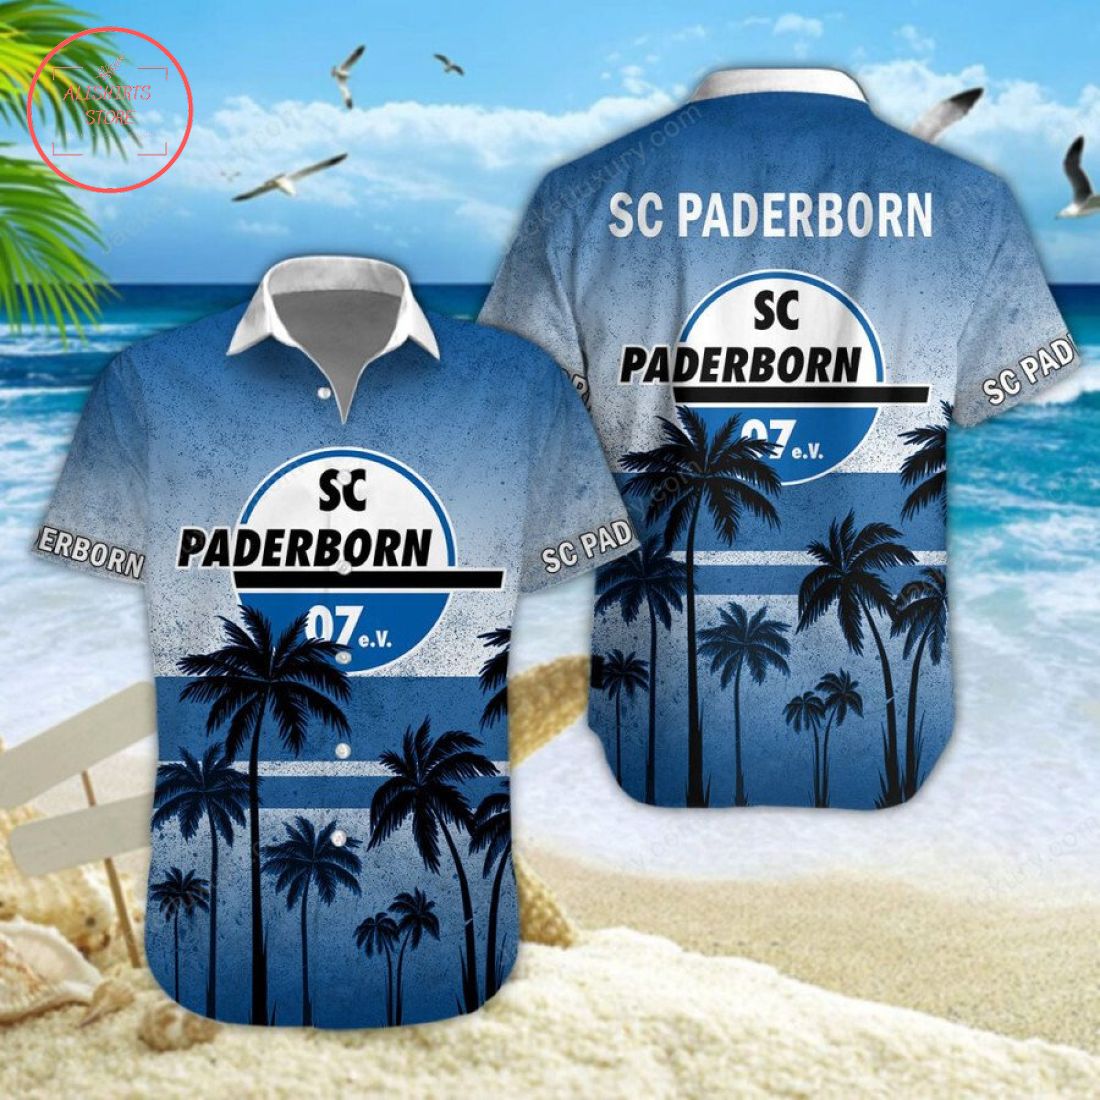 SC Paderborn Hawaiian Shirt and Shorts